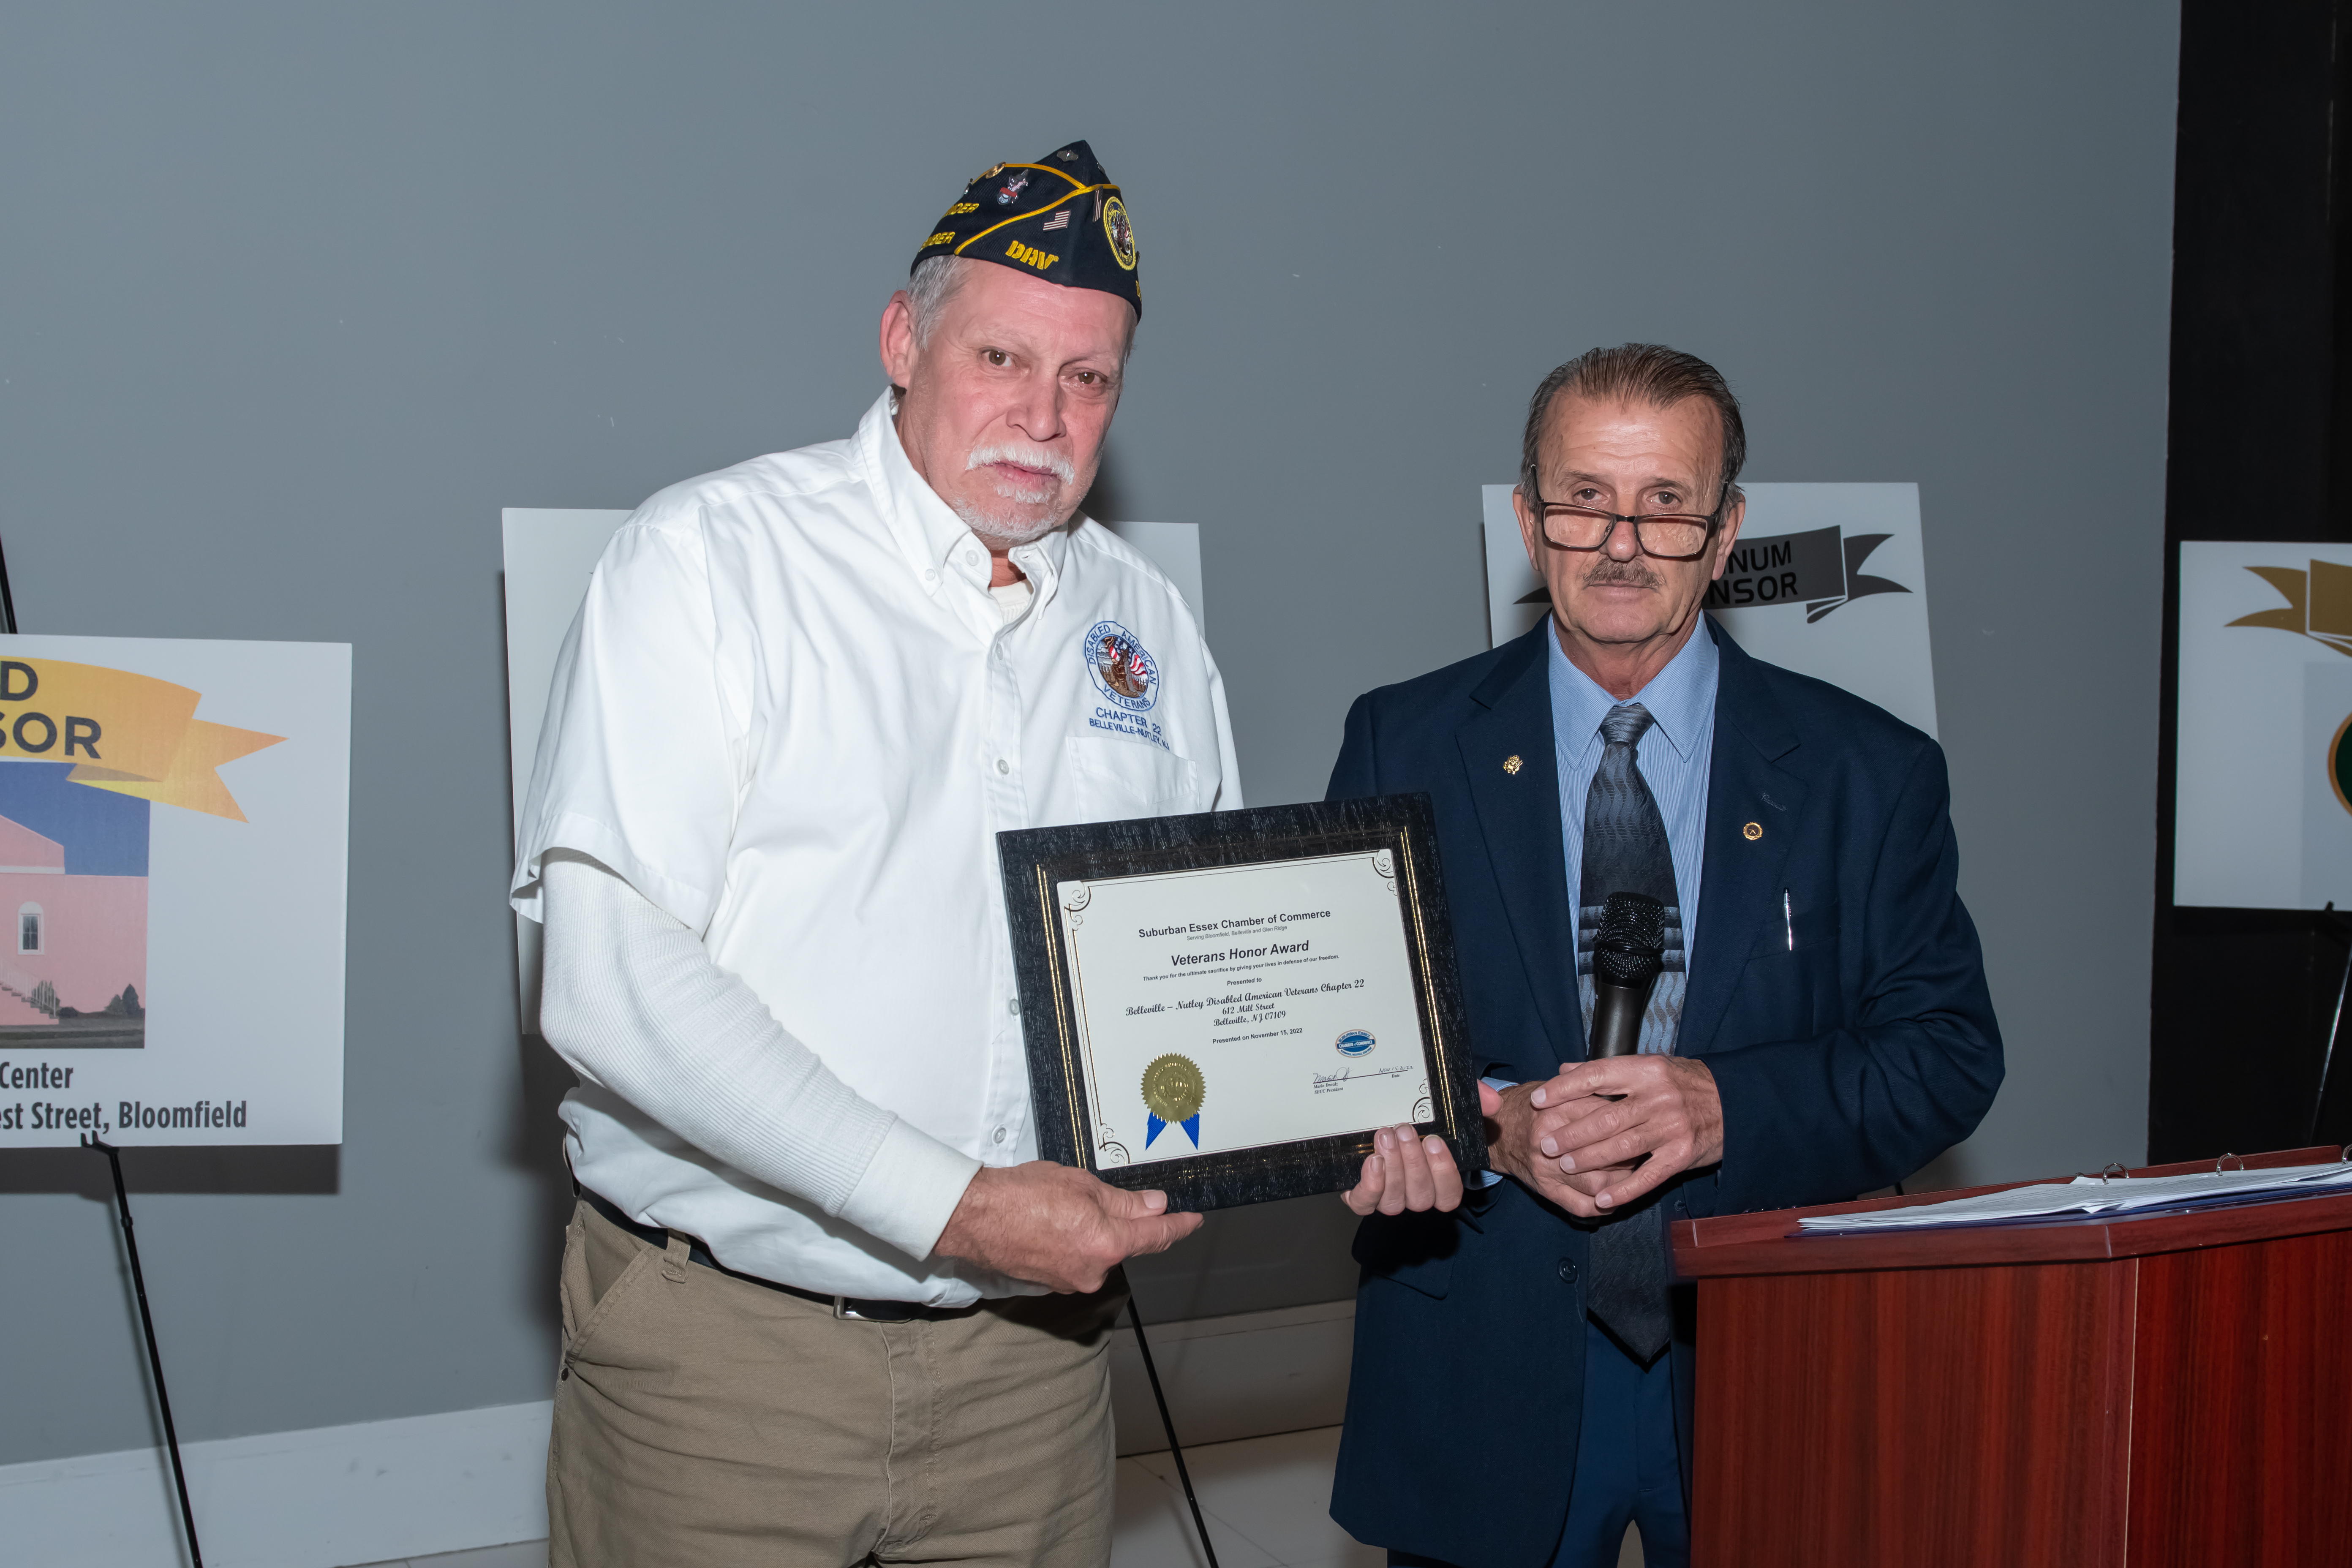 Veterans Chapter 22 award